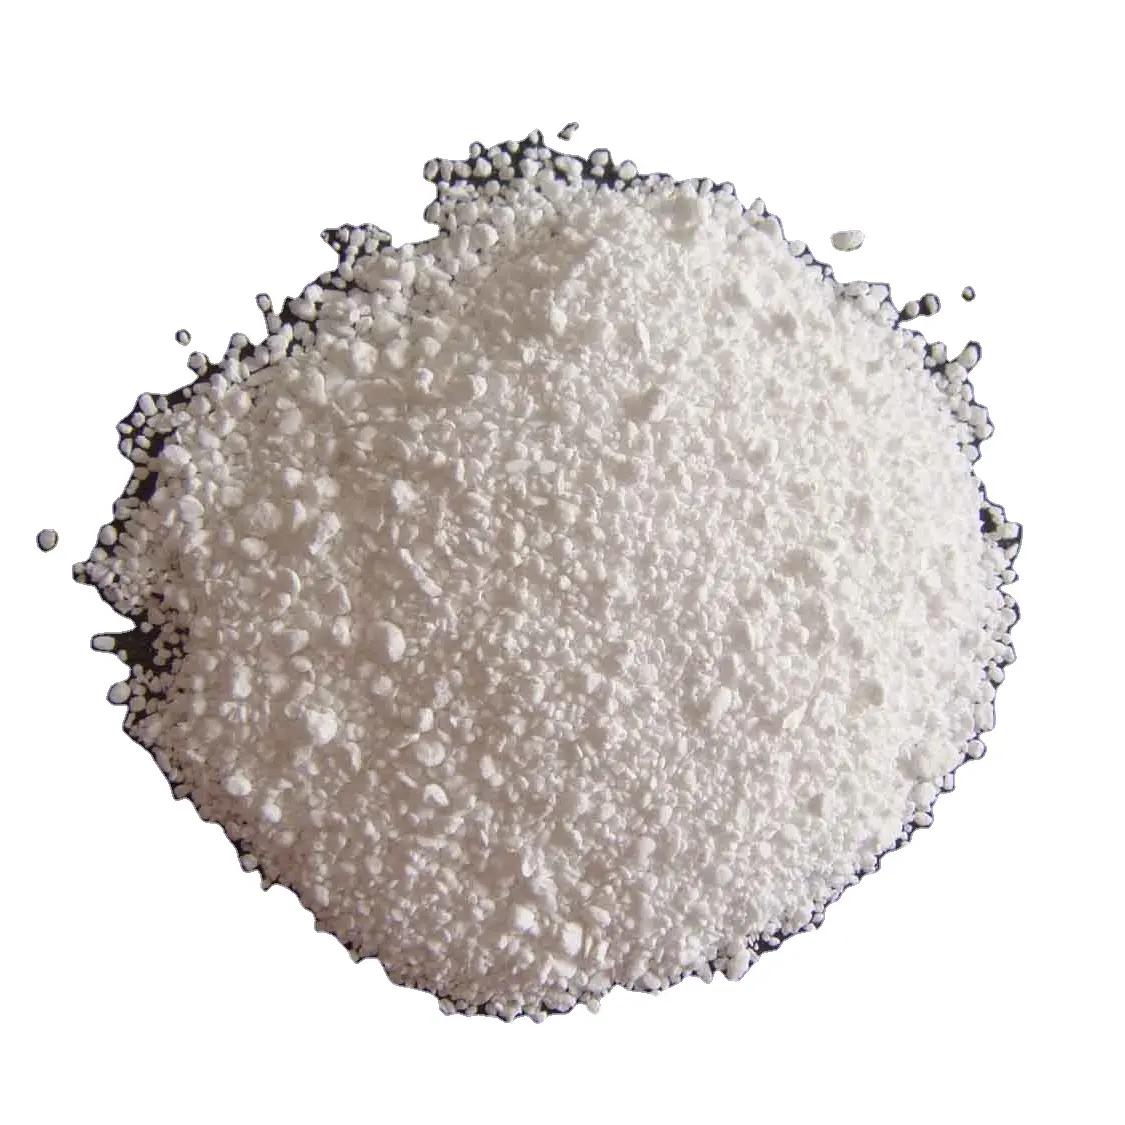 Giá thấp 120-800 lưới công nghiệp cấp 99% hoặc nhiều hơn sodium bicarbonate baking soda nahco3 bột màu trắng